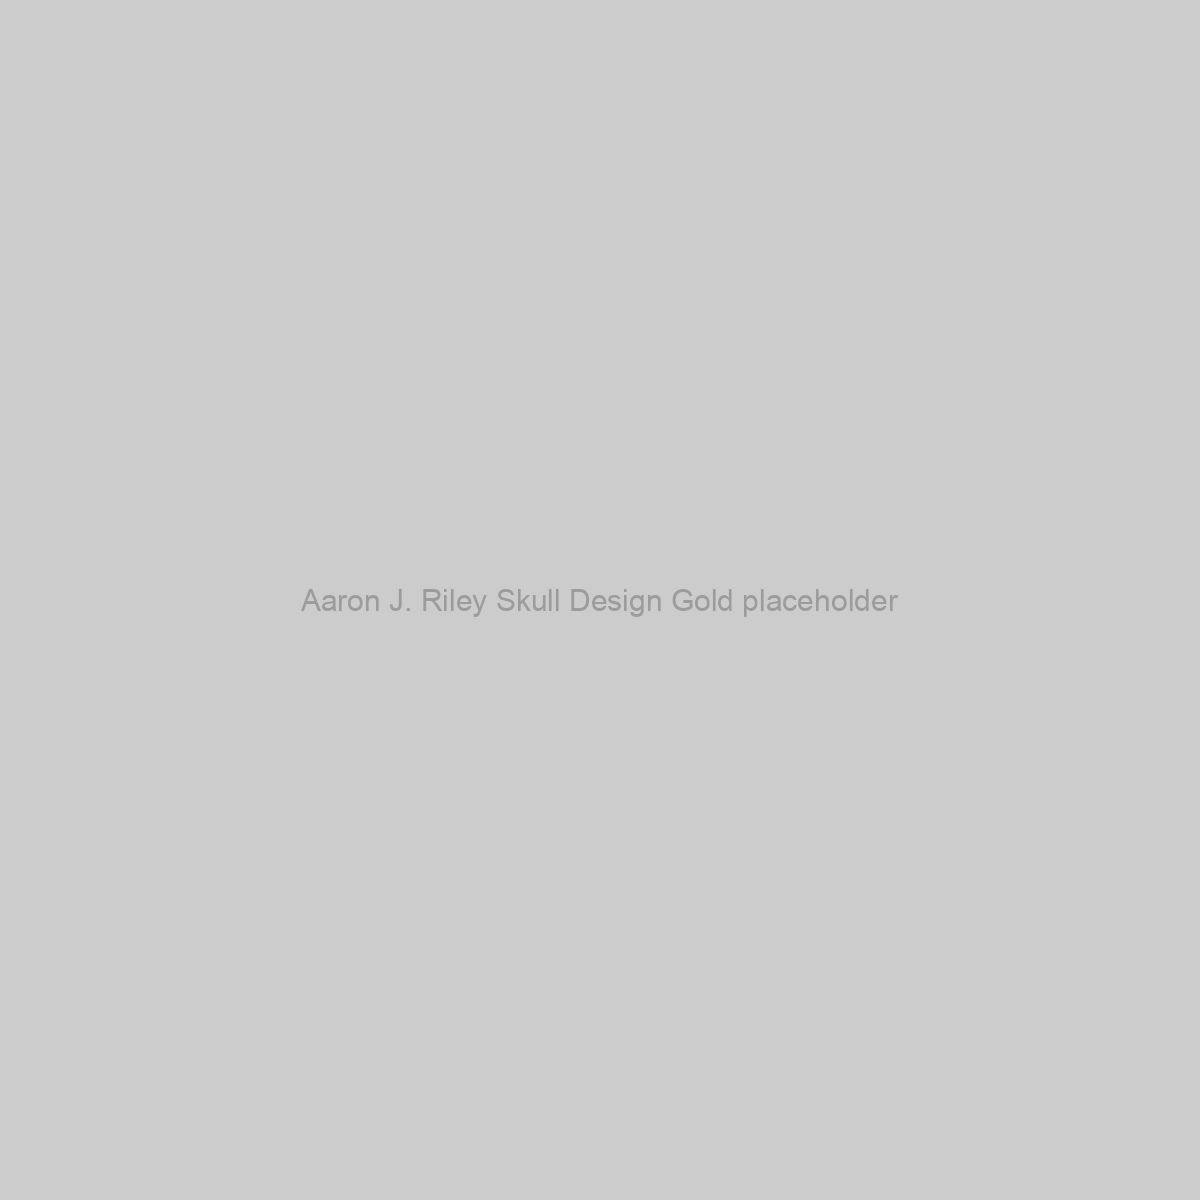 Aaron J. Riley Skull Design Gold Placeholder Image